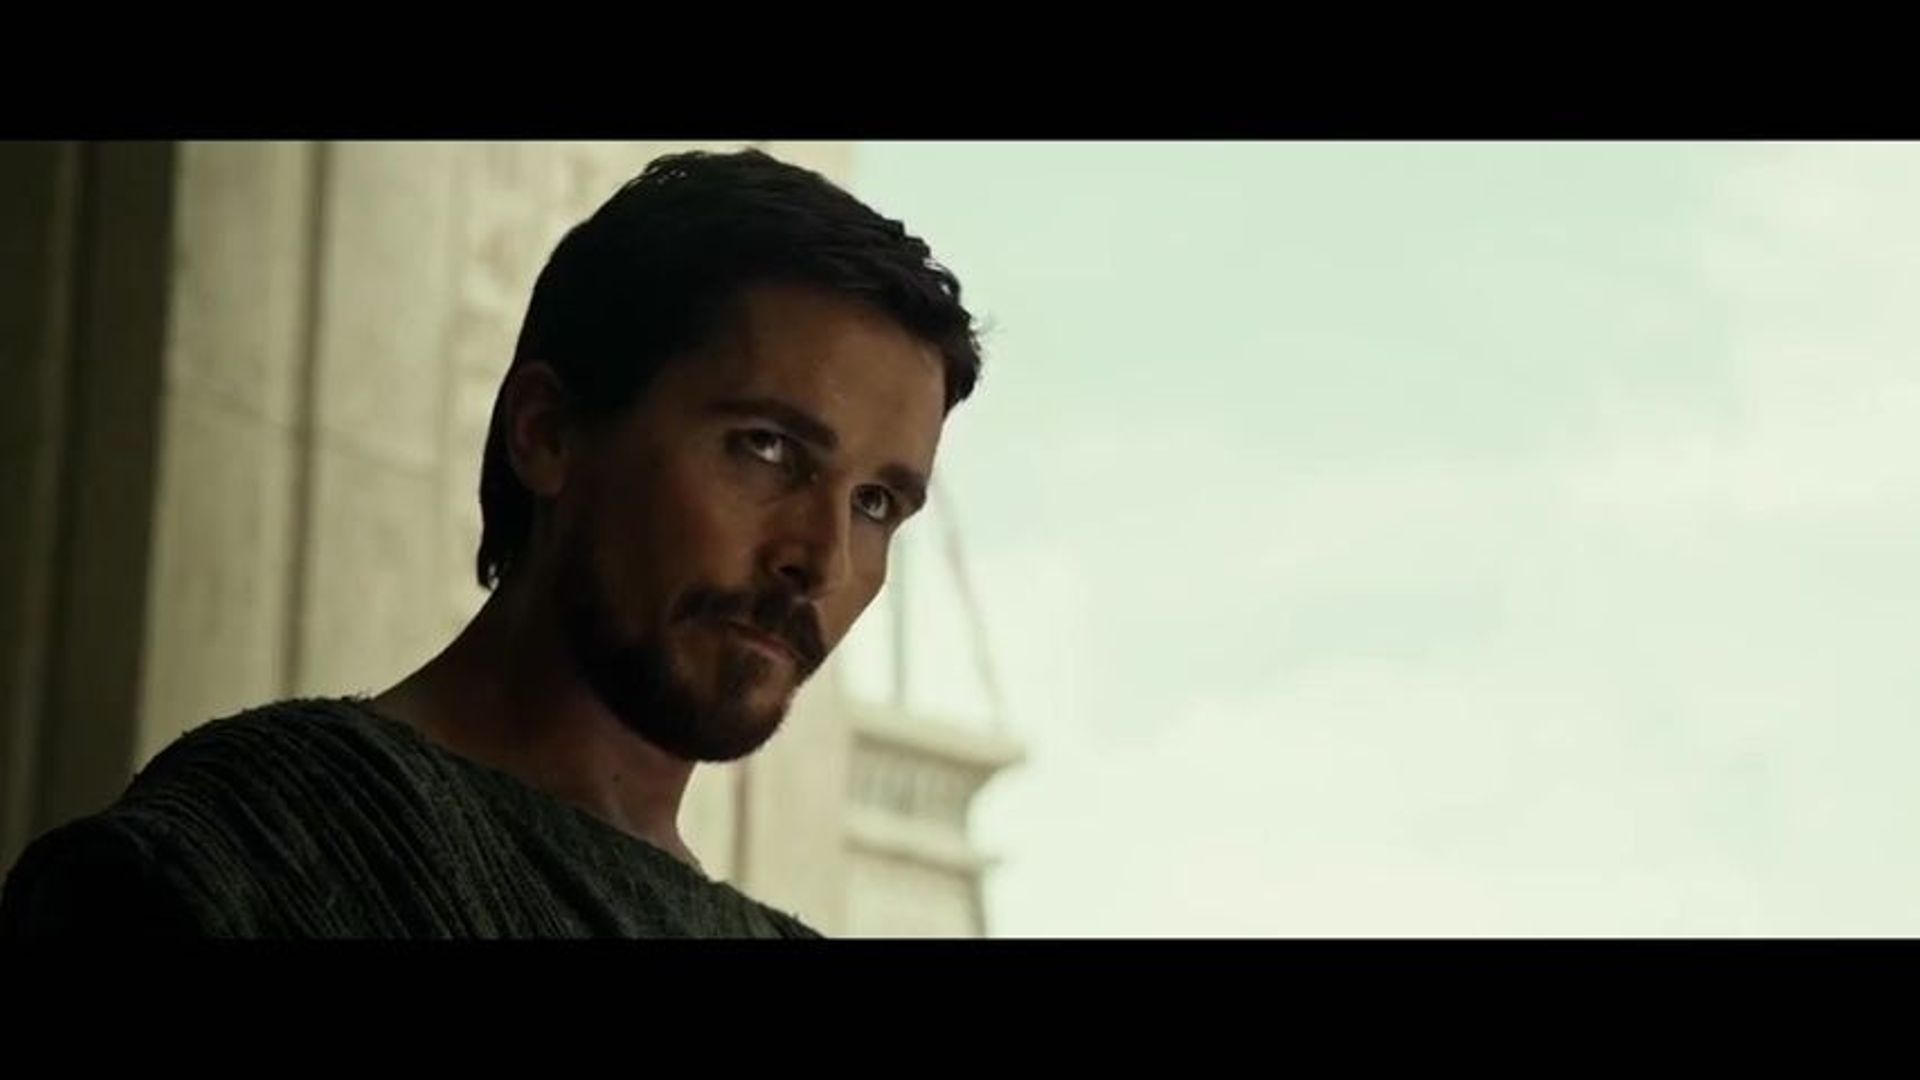 Capture d'écran : Moïse (Christian Bale) dans "Exodus: Gods And Kings"